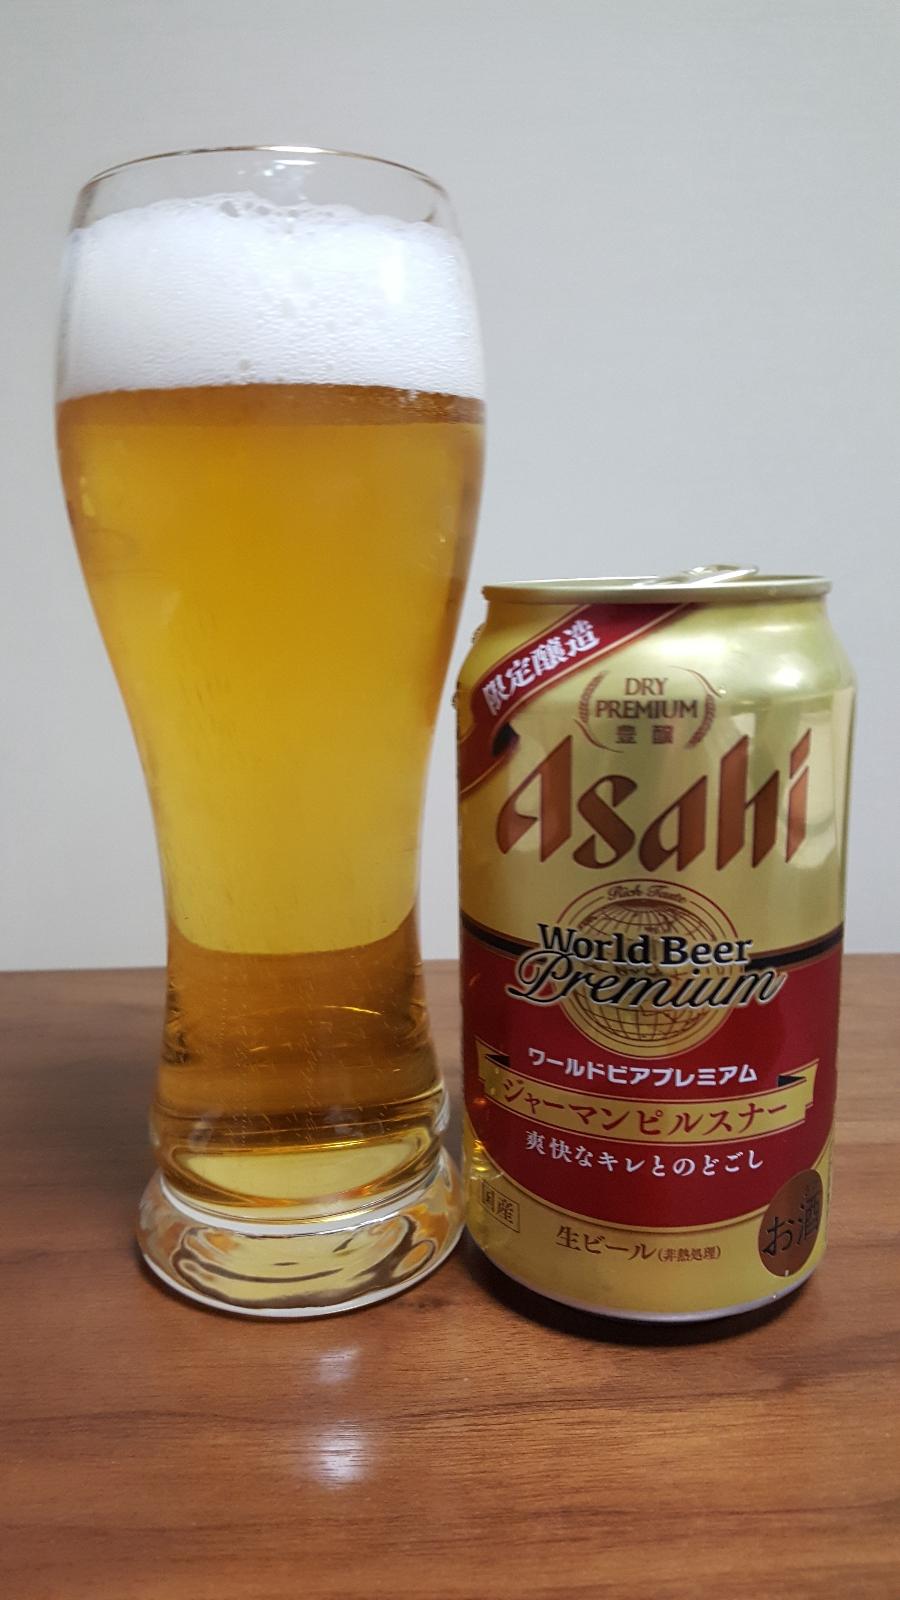 Asahi World Beer Premium: German Pilsener